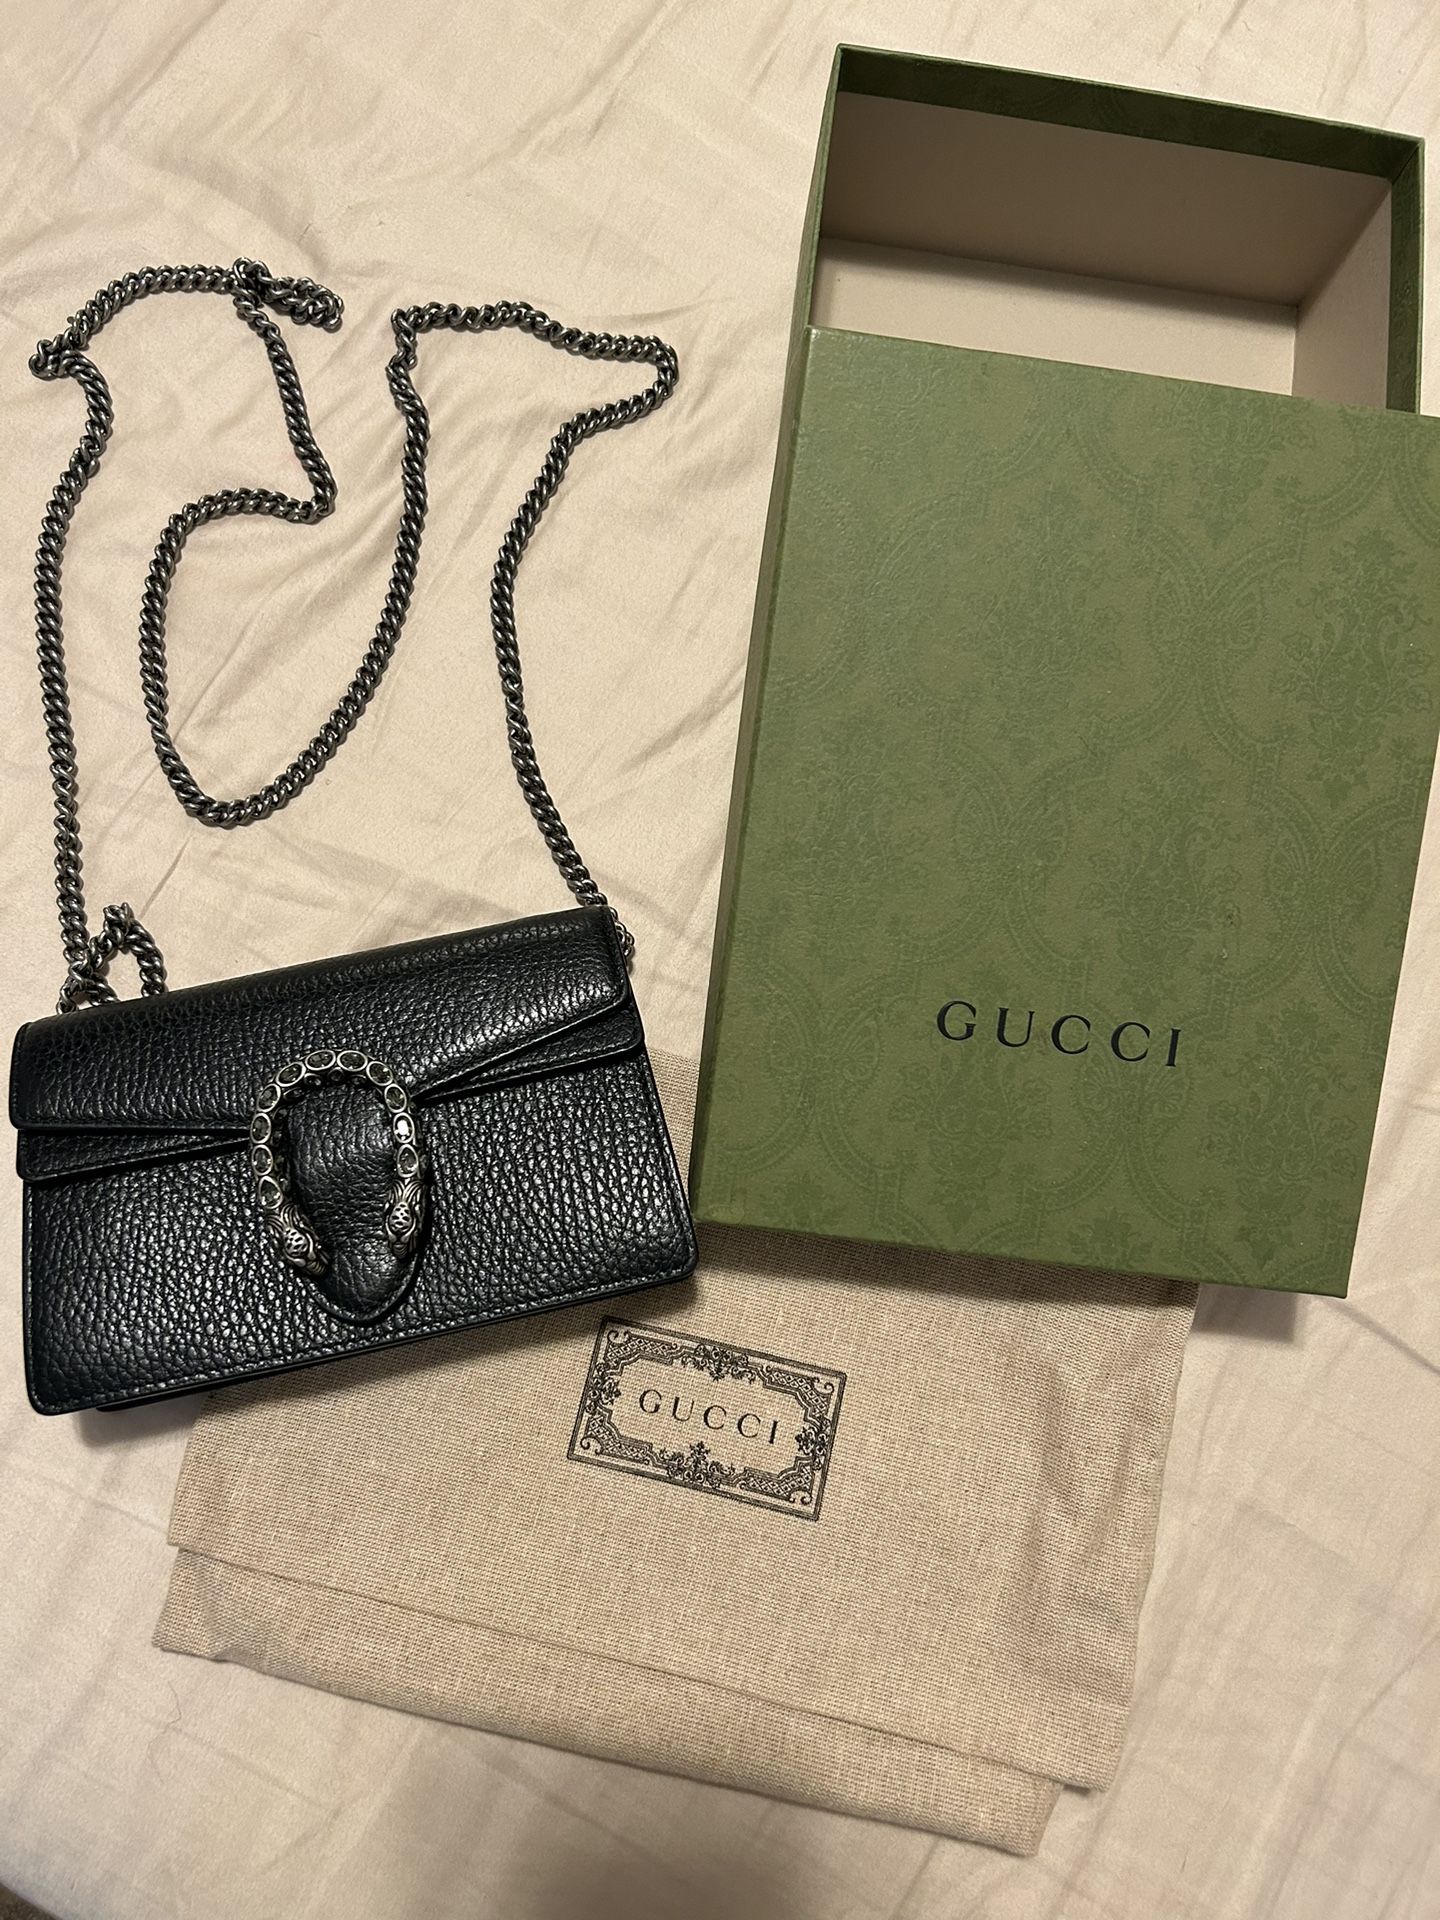 Gucci Mini Bag Authentic 